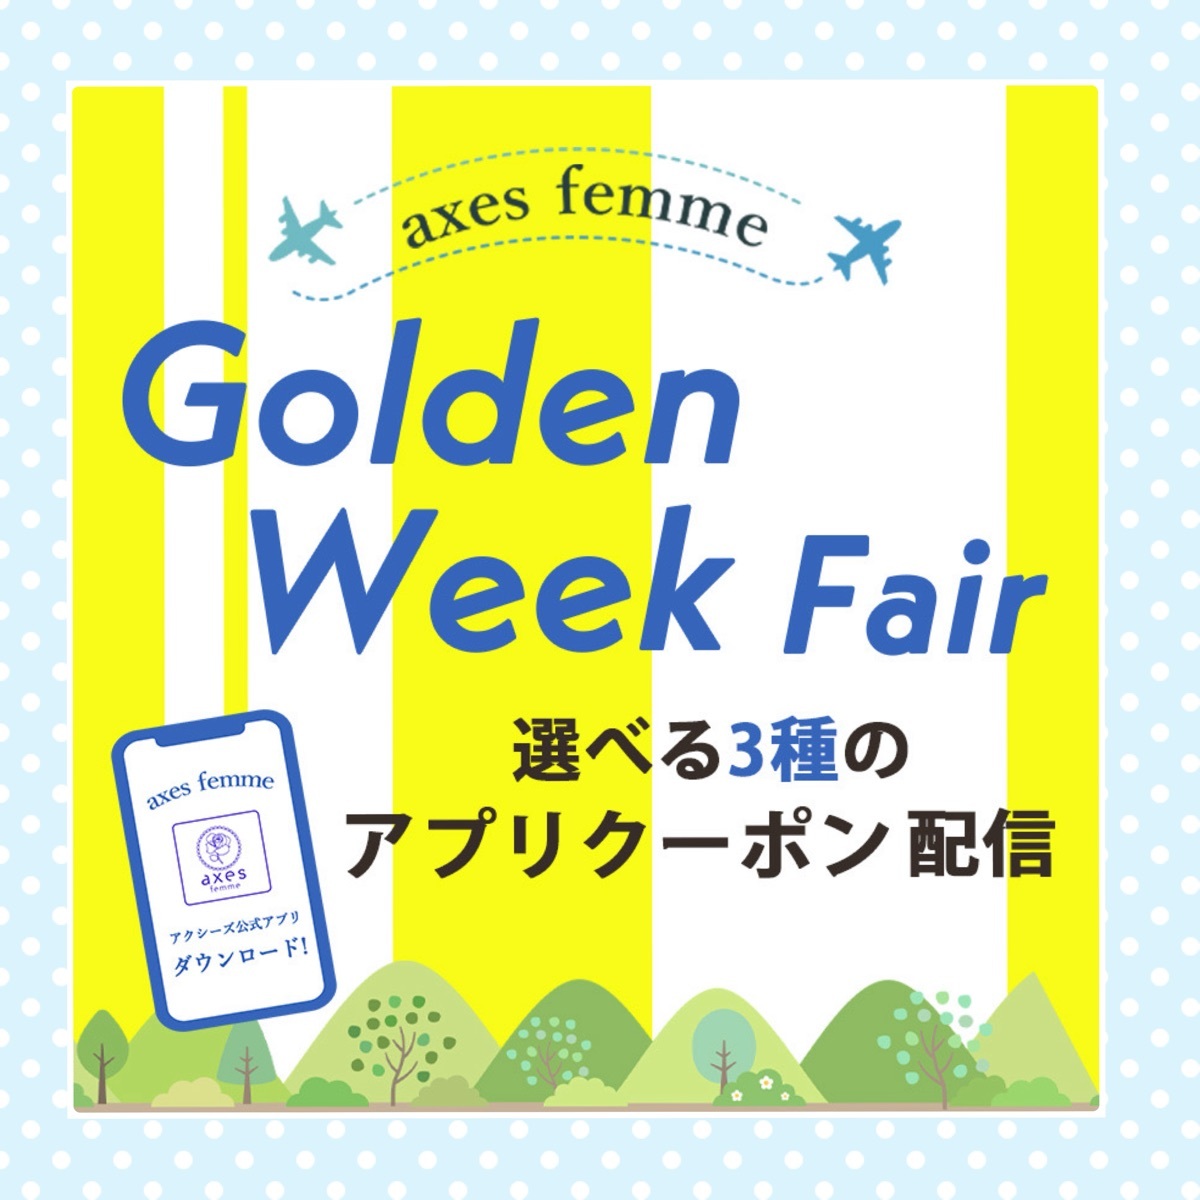 ☆Golden Week Fair☆